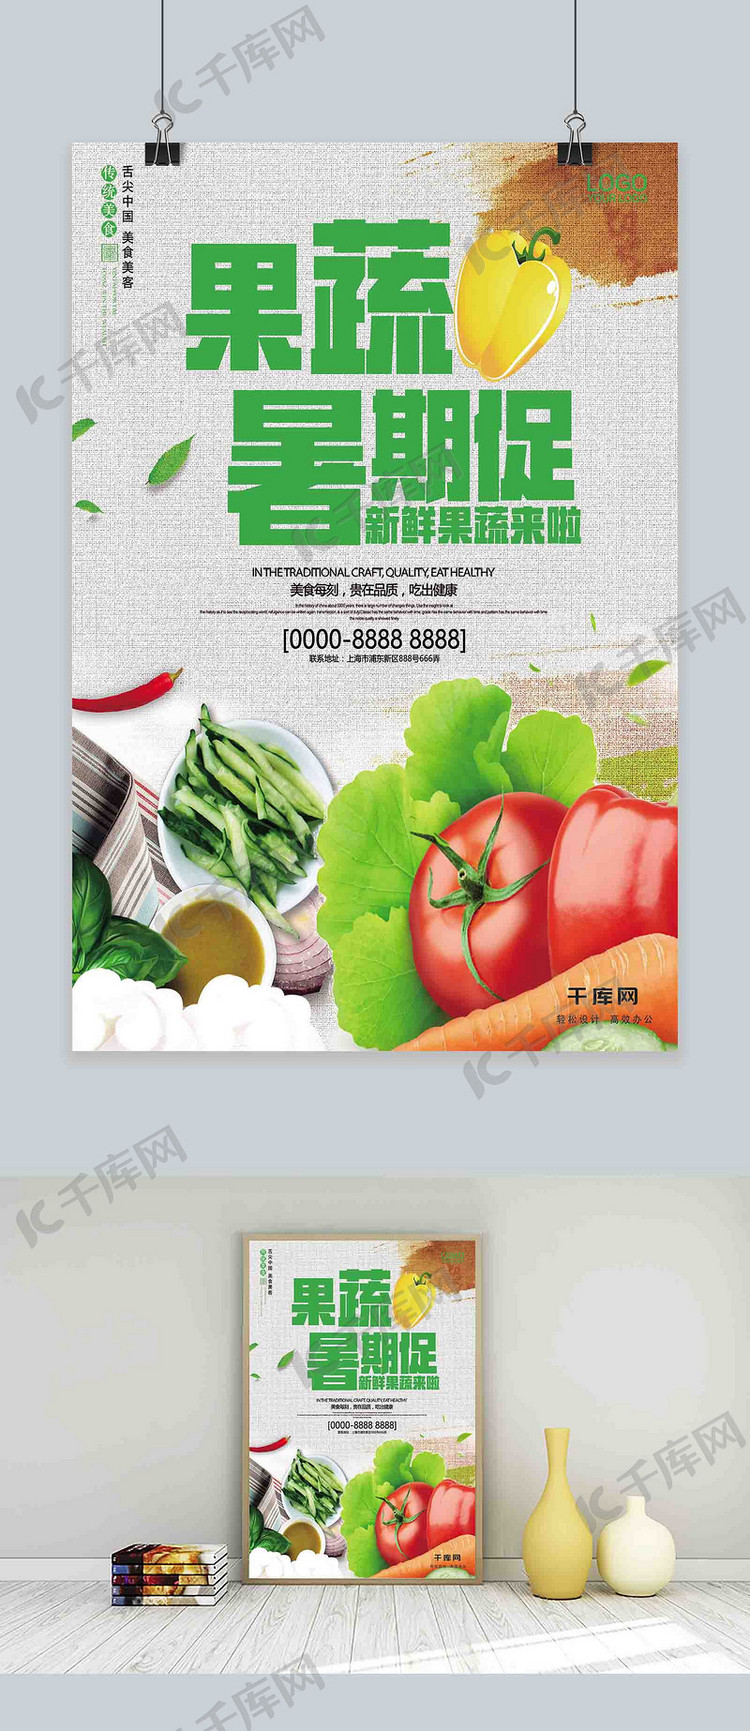 简约新鲜果蔬夏季特价促销海报